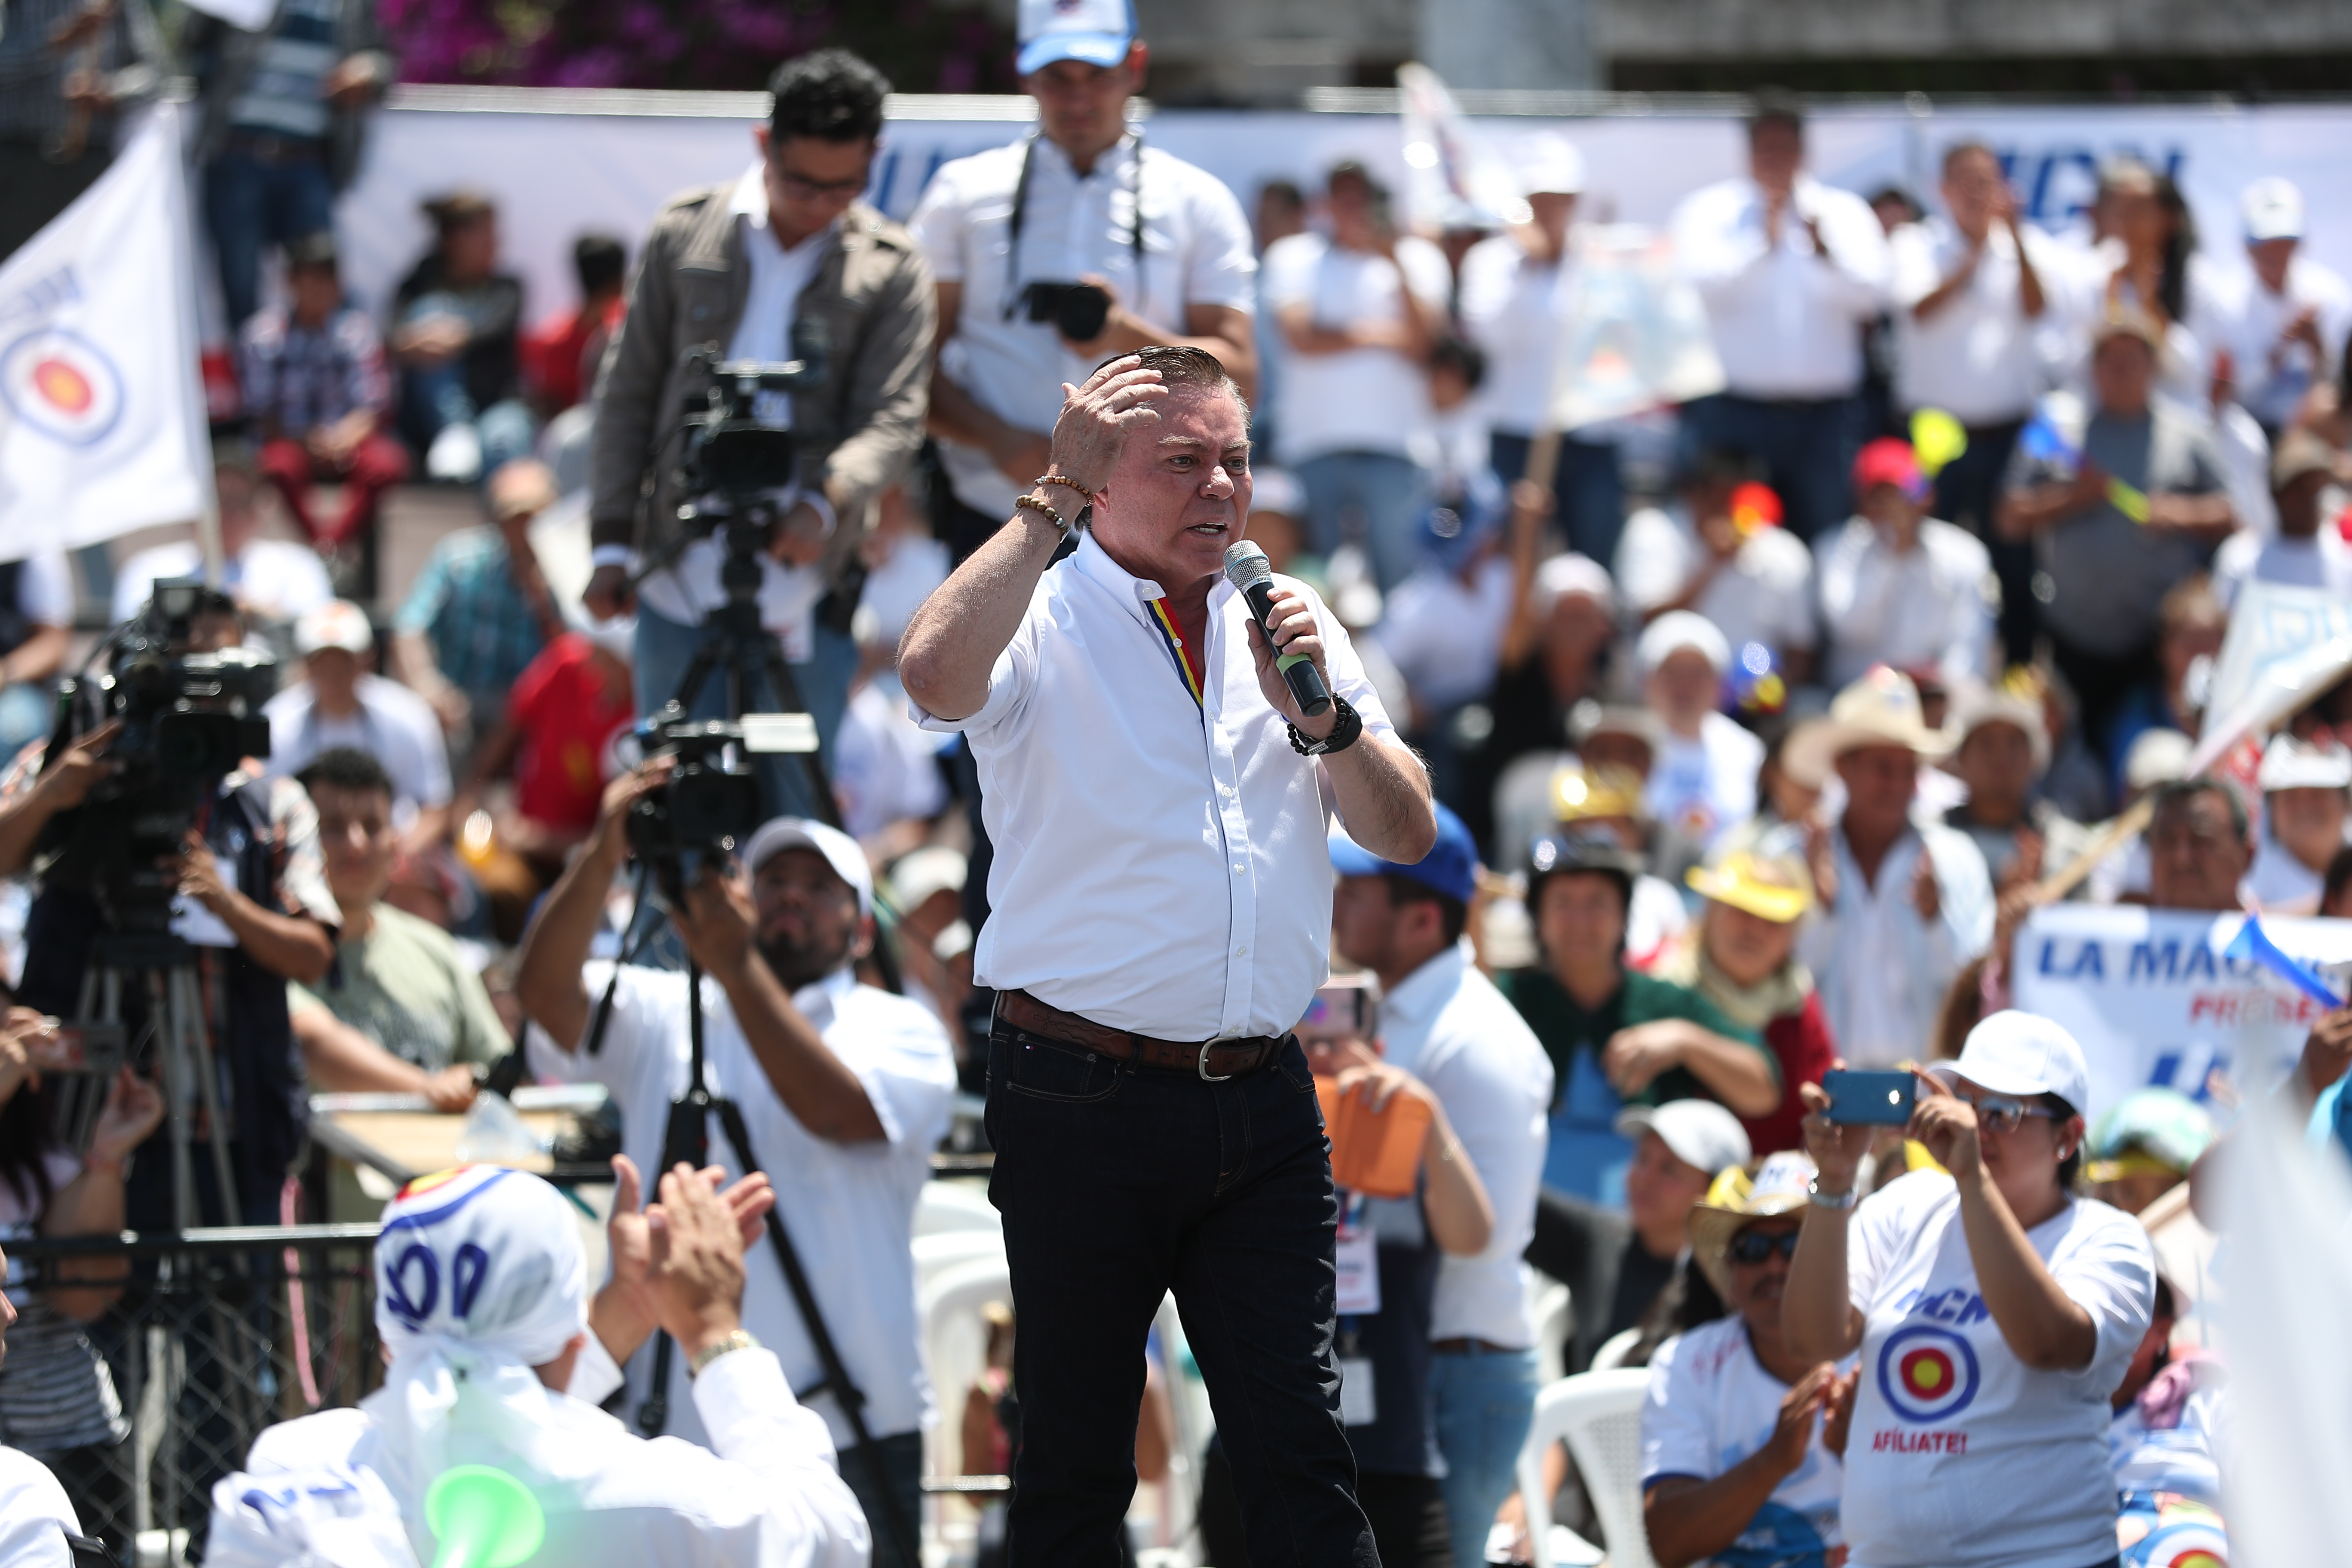 Mario Estrada candidato a la presidencia  durante el Lanzamiento de campaña del partido político UCN se llevóa cabo en la Plaza Obelisco.

Foto por Carlos Hernández Ovalle
23/03/2019